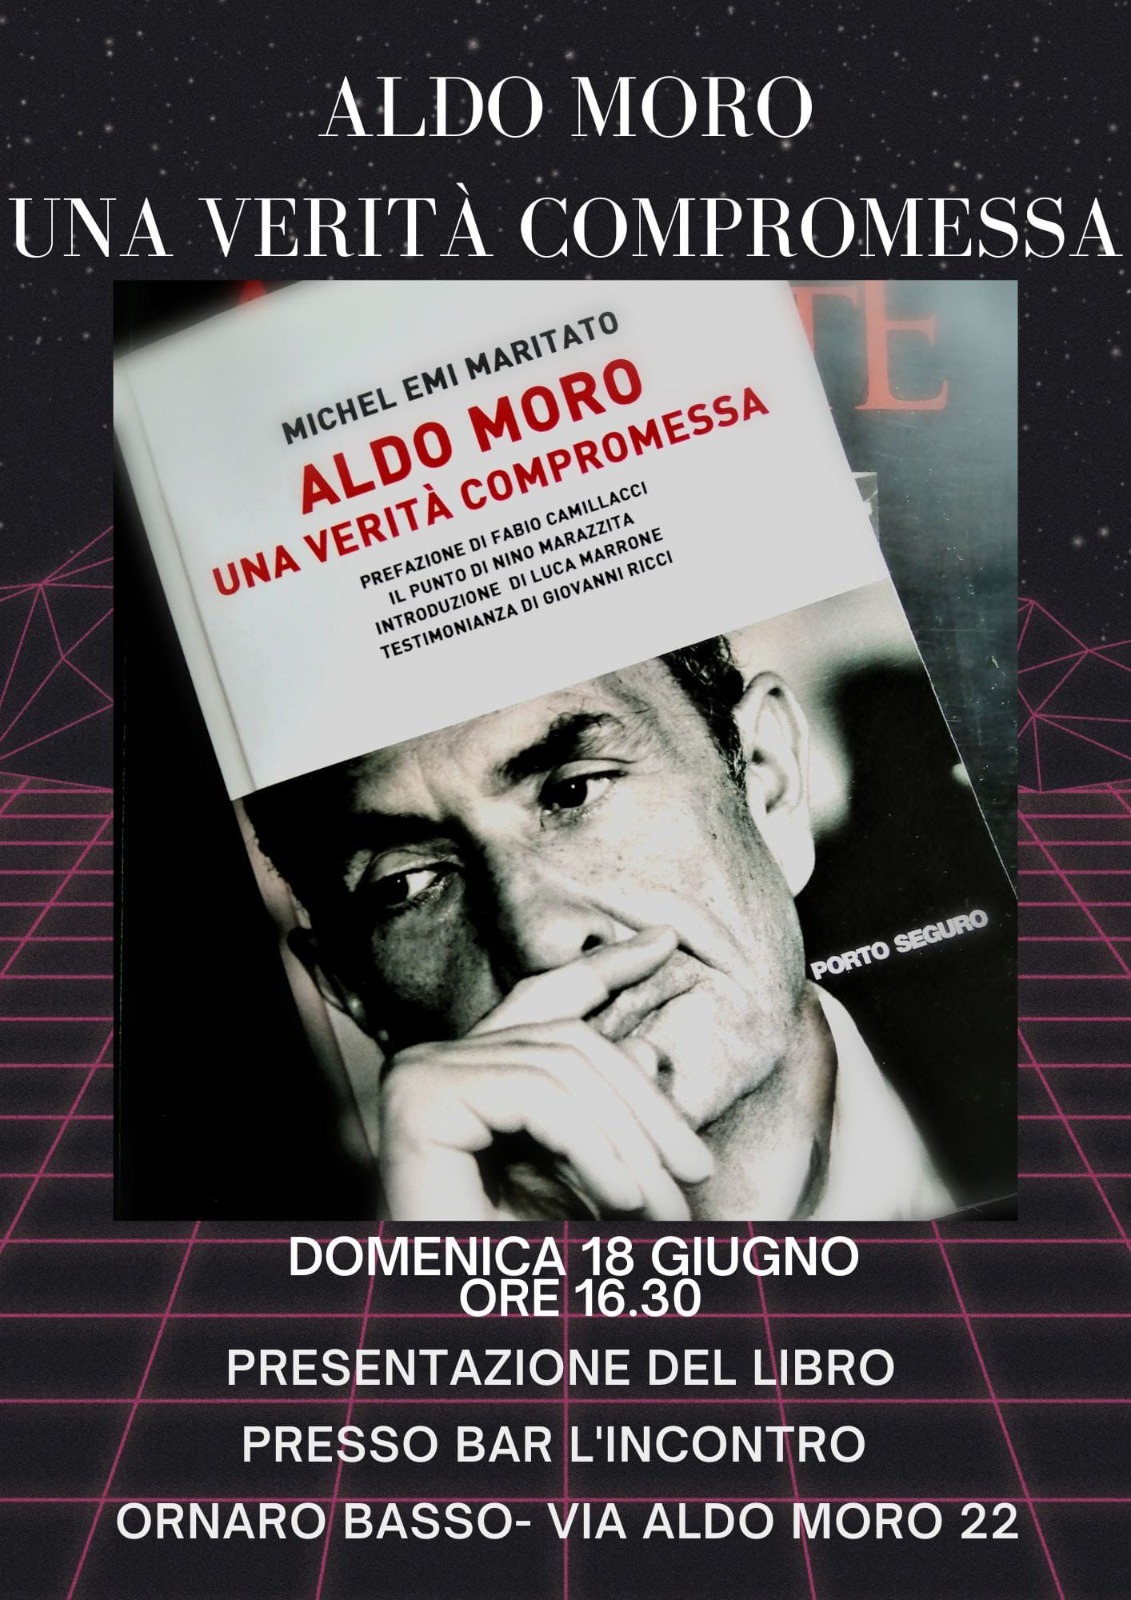 Cultura, presentazione del libro di Maritato su Aldo Moro